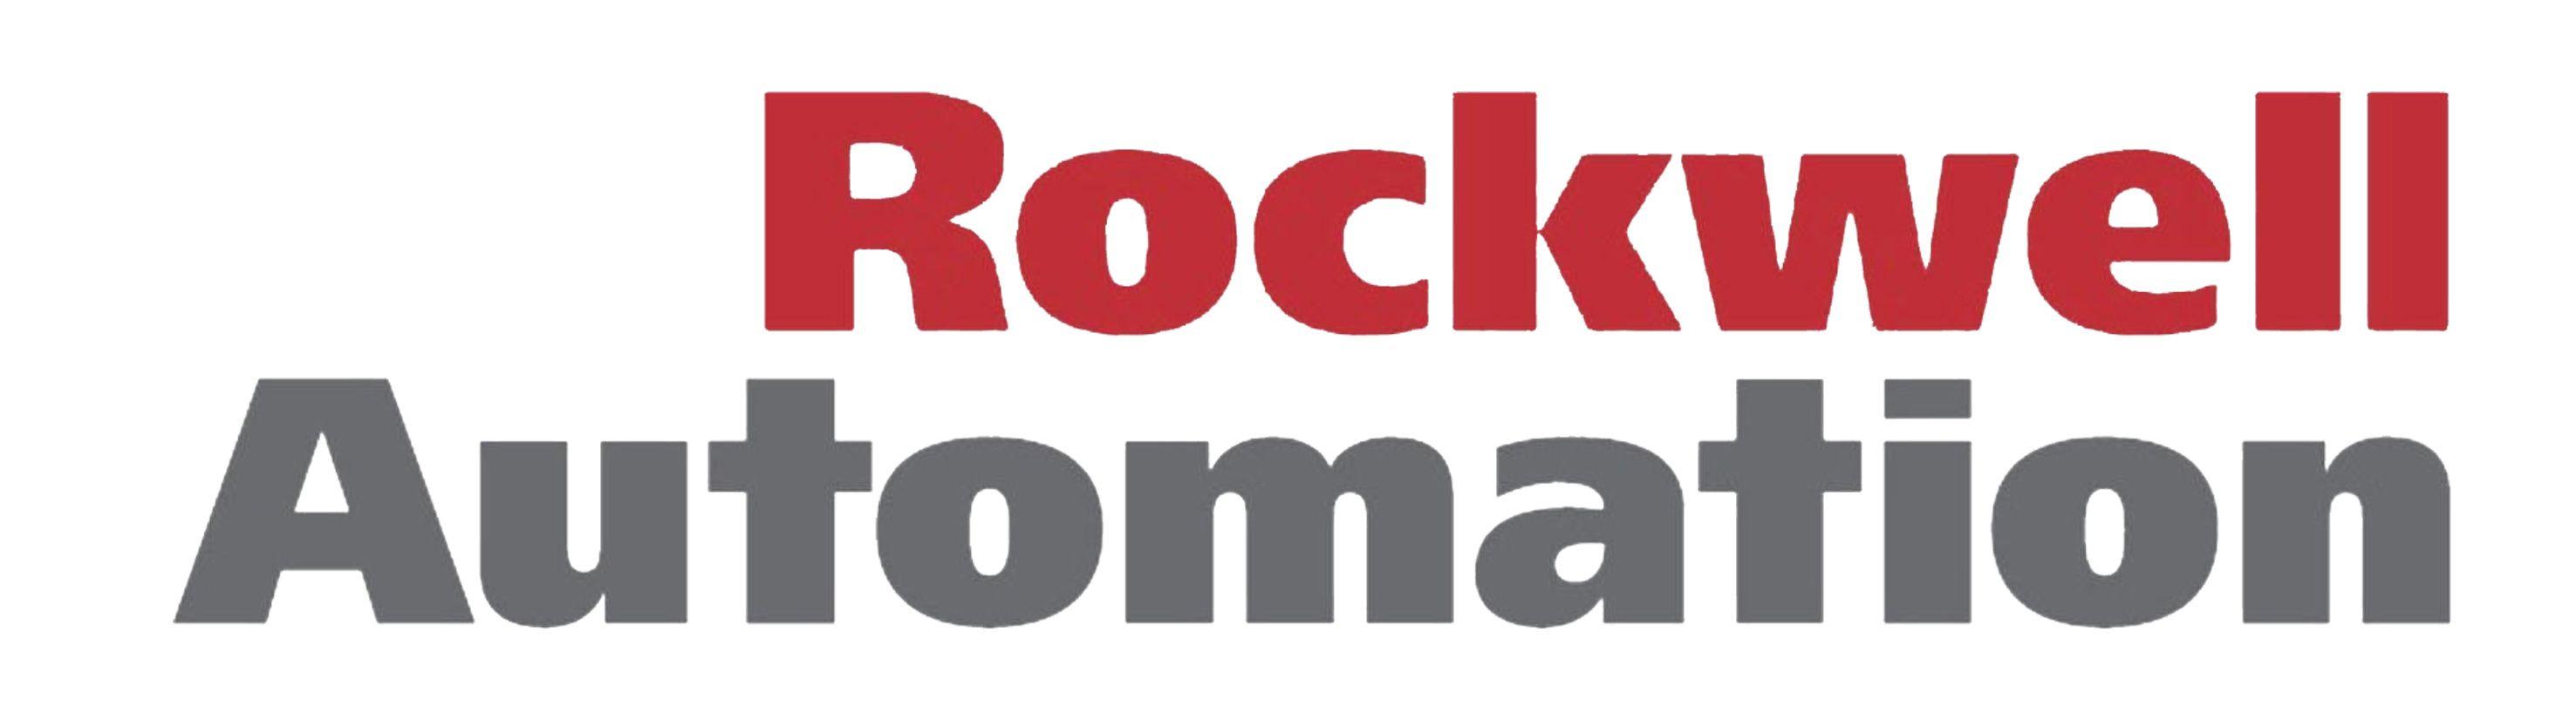 Rockwell Automation Logo - Rockwell Automation « Logos & Brands Directory